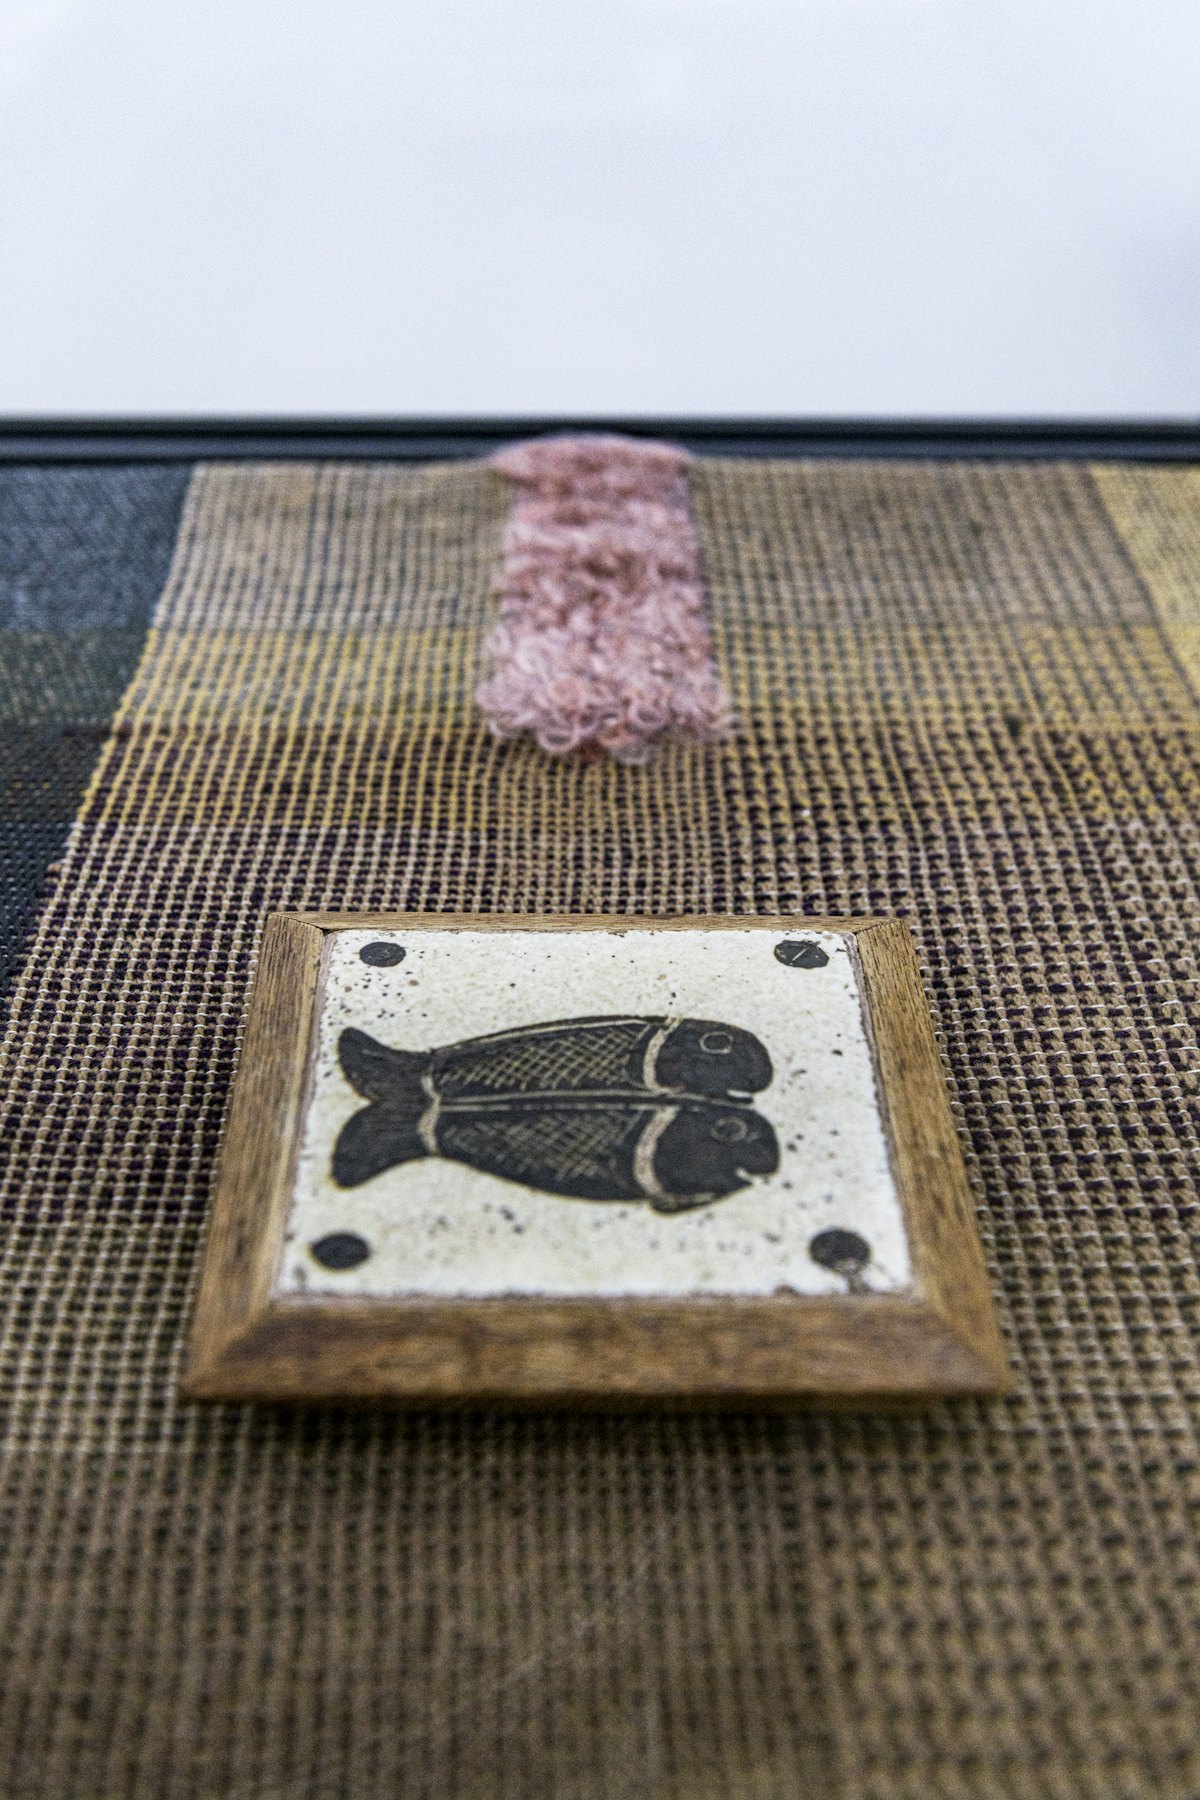 Un carreau décoré de poissons de Bernard Leach exposé sur un tissu tissé par l’artiste Travis Josef Meinolf, à l’installation de « Kai Althoff accompagne Bernard Leach » à la Galerie Whitechapel, Londres, 7 octobre 2020-10 janvier 2021. Photo : Polly Eltes